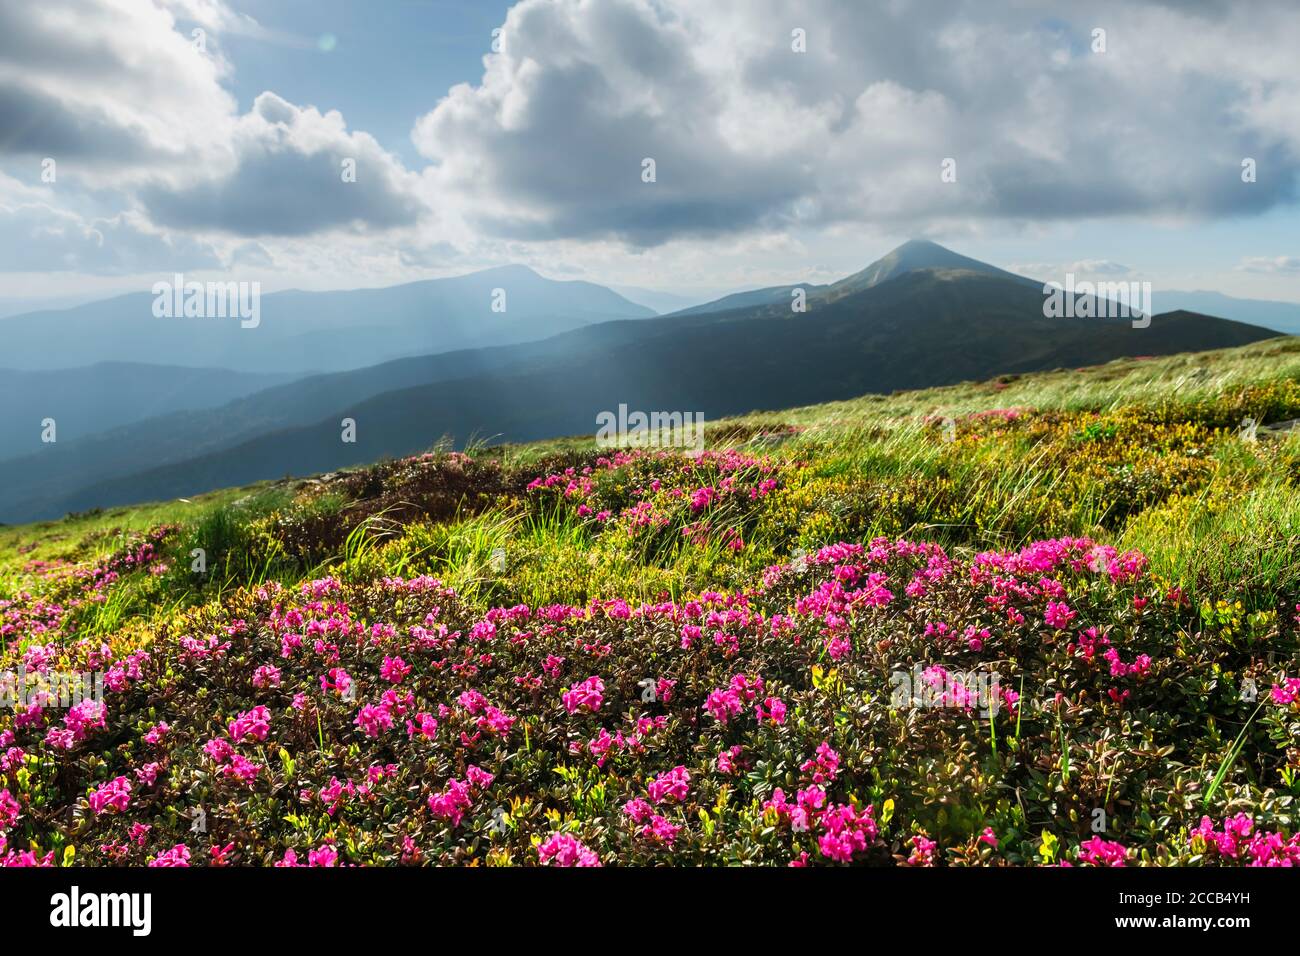 Les fleurs de Rhododendron couvraient la prairie des montagnes en été. Magnifique lumière de lever de soleil illuminée en premier plan. Photographie de paysage Banque D'Images